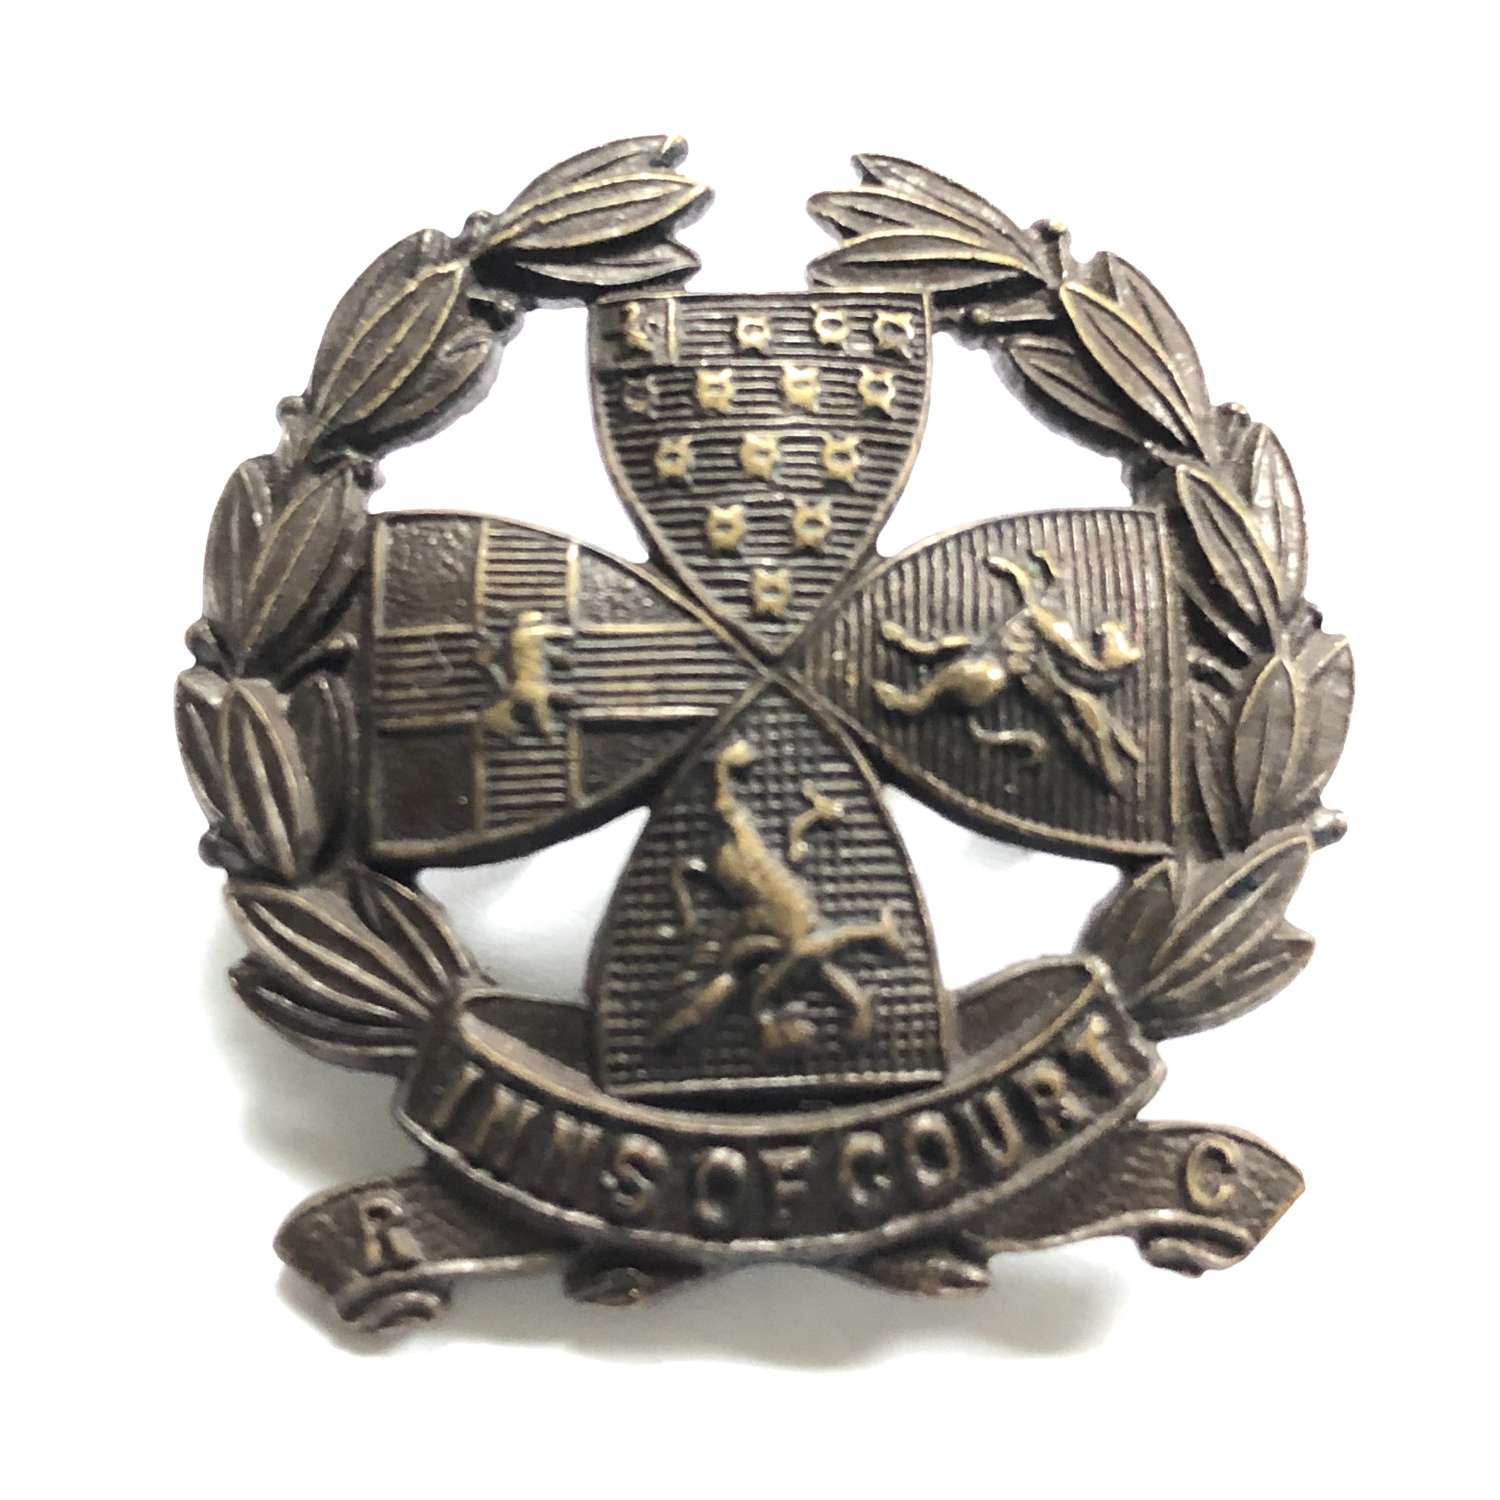 Inns of Court Volunteer Reserve Corps VTC WW1 cap badge